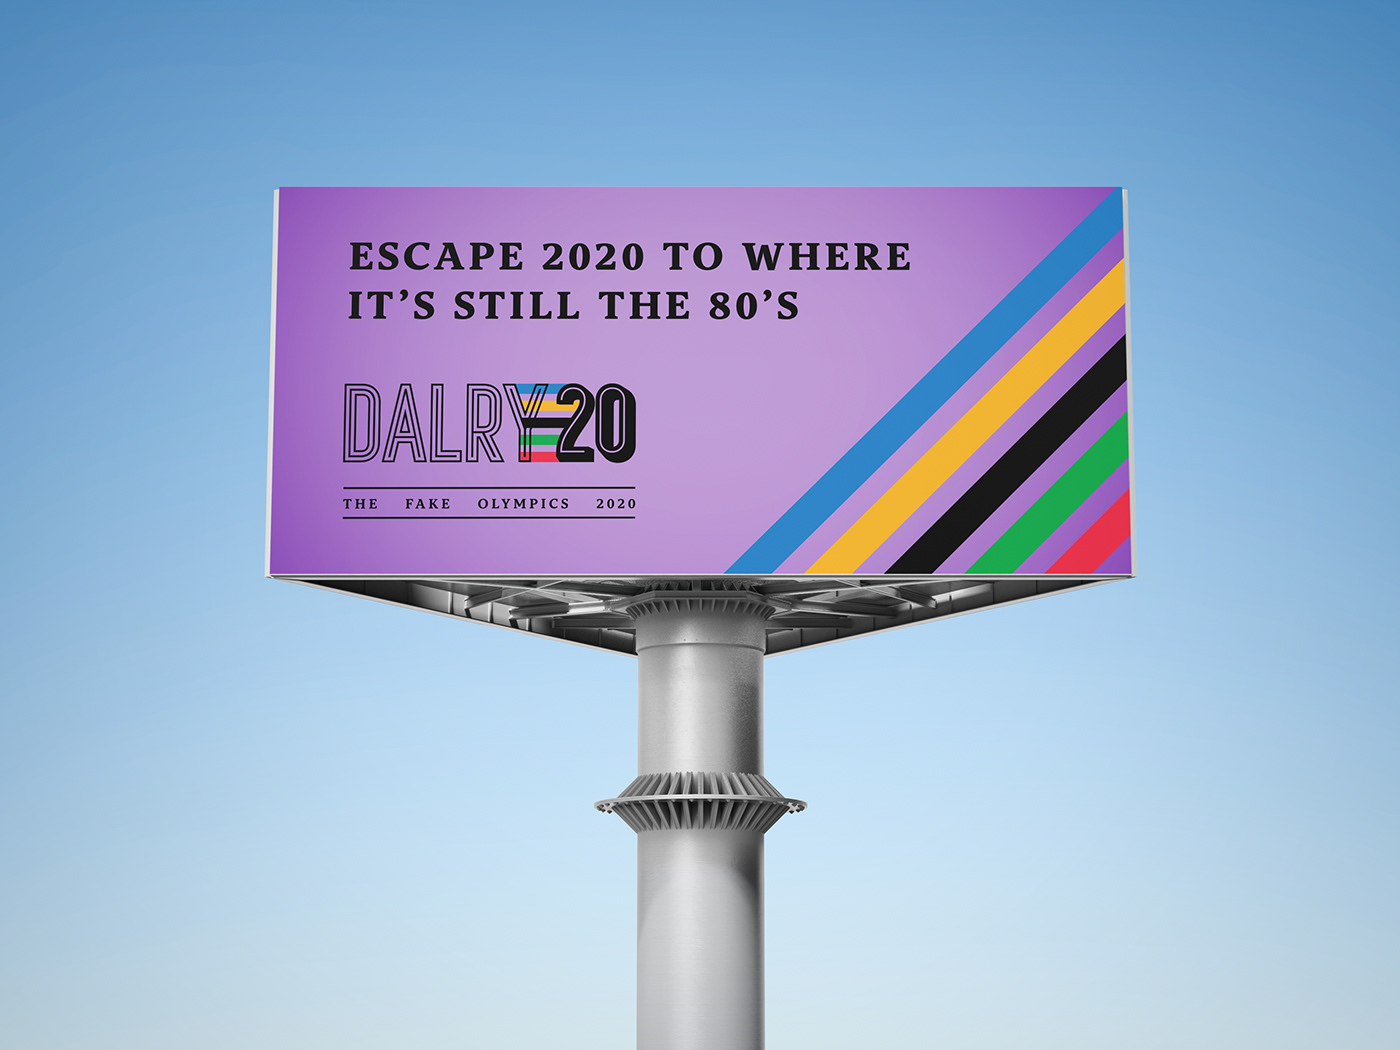 A purple billboard for the event. "Escape 2020 to where it's still the 80's - Dalry 2020"